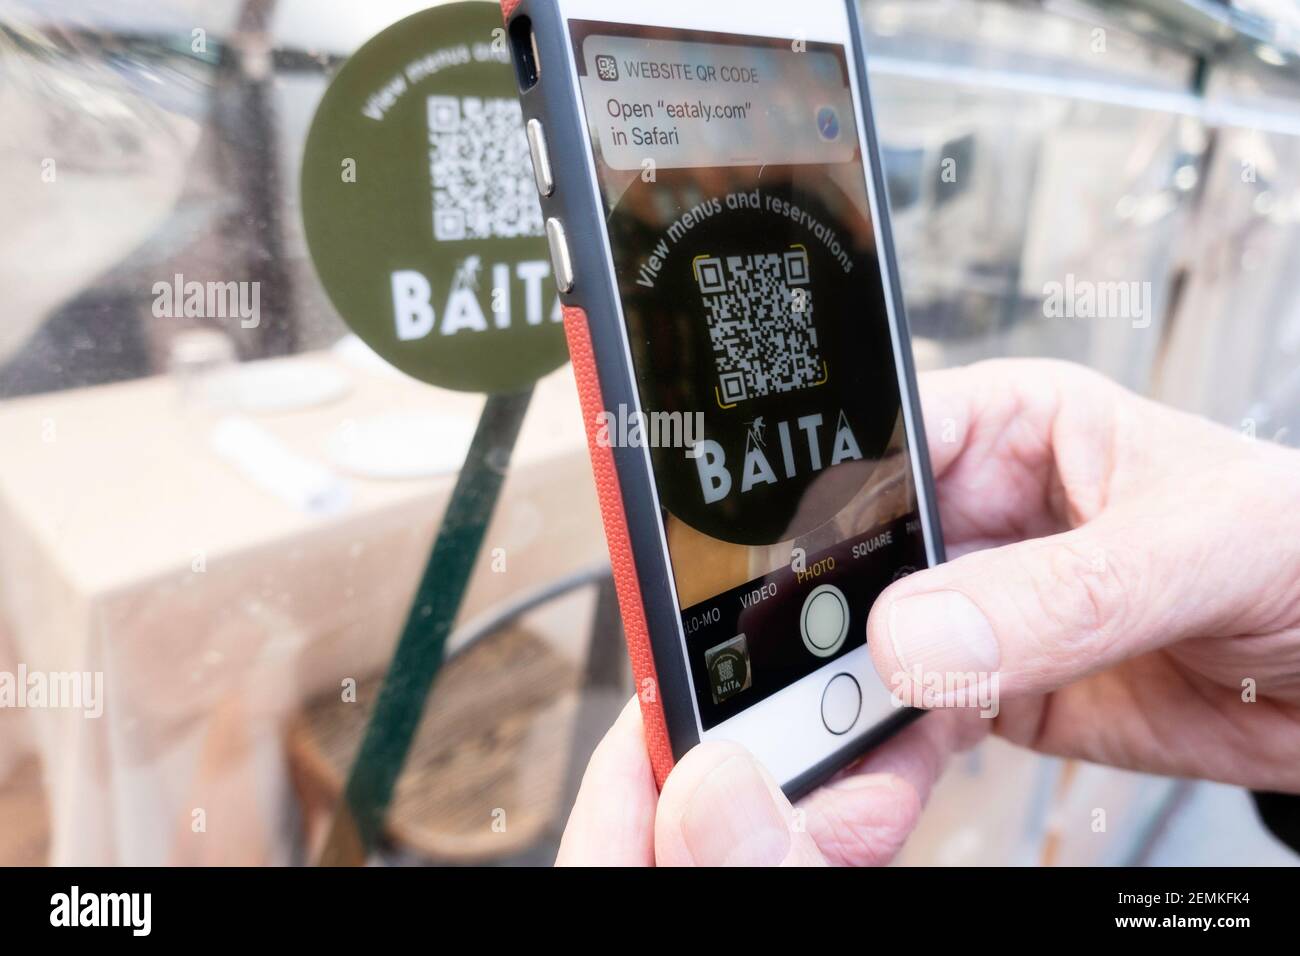 Le restaurant Baita de l'Eataly, une destination gastronomique italienne, propose des repas à l'extérieur dans des gousses solaires à New York, aux États-Unis Banque D'Images